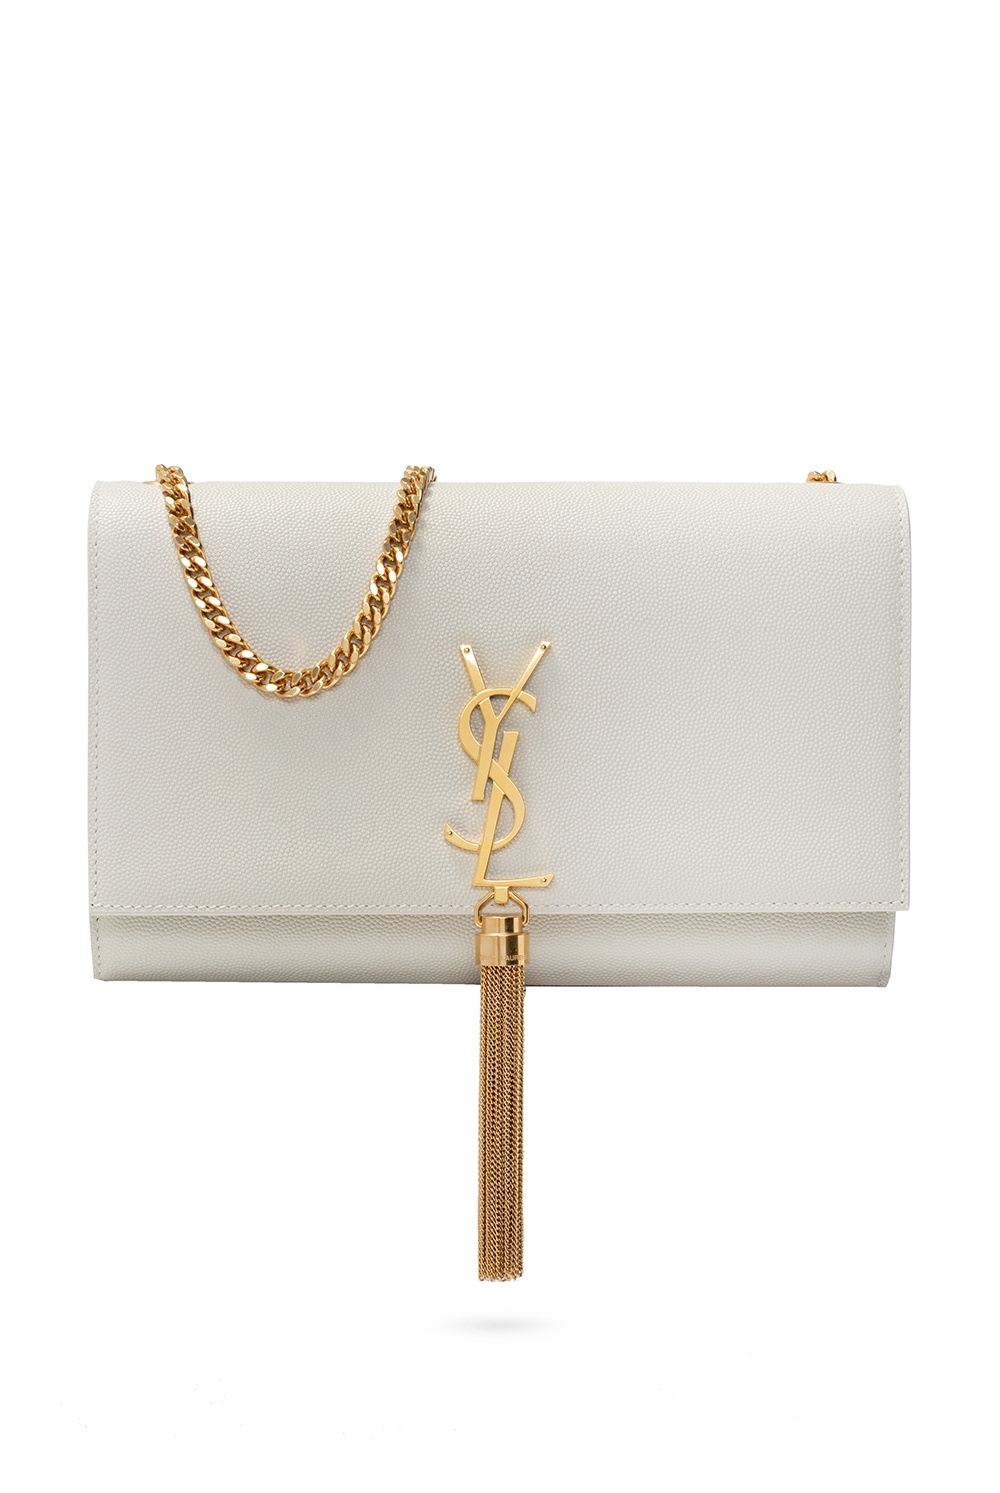 Saint Laurent 'Monogram' clutch, Women's Bags